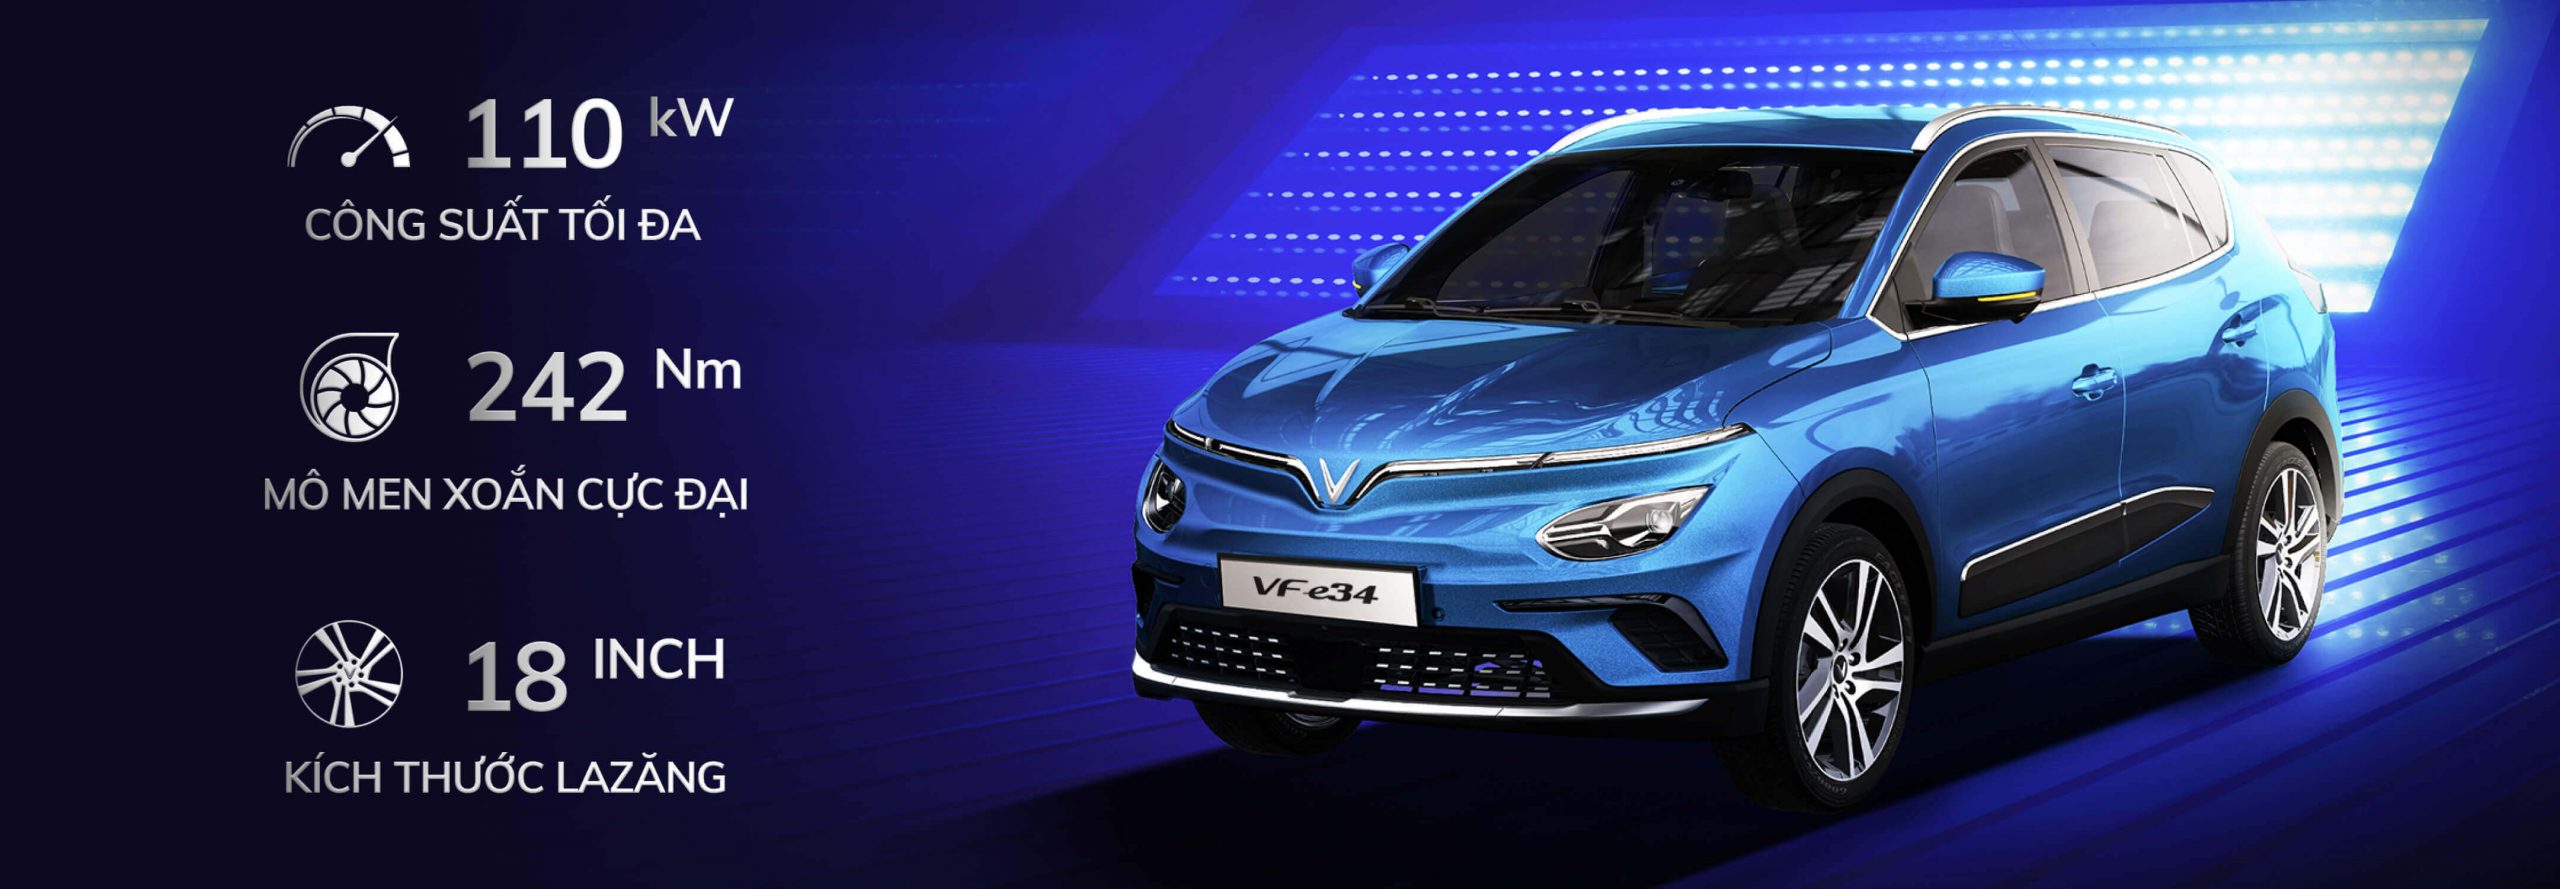 VinFast ra mắt VF e34 – ô tô điện đầu tiên của Việt Nam, mở bán ưu đãi 590 triệu